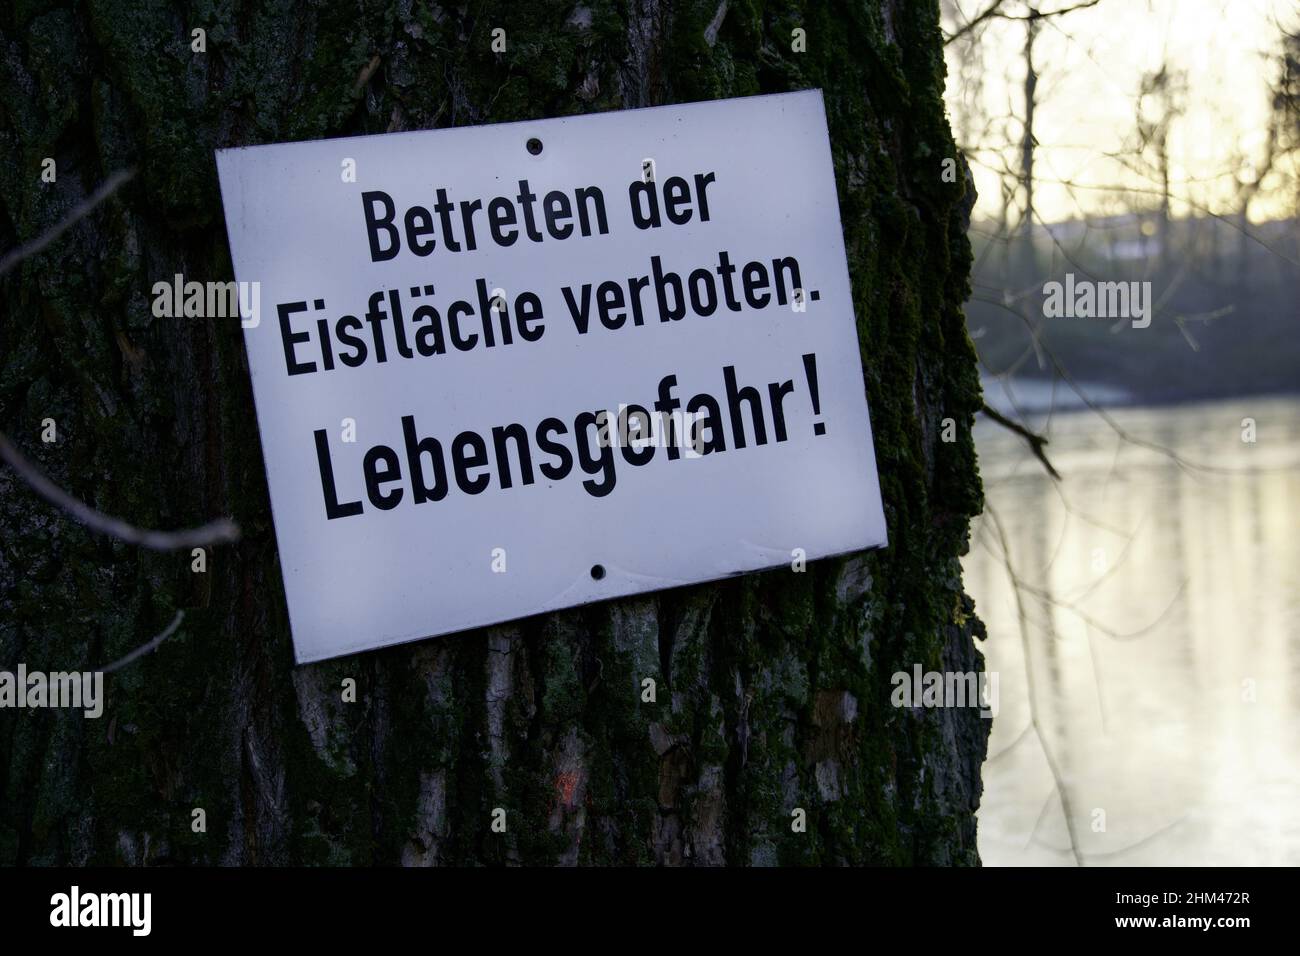 Betreten der Eisflaeche verboten! Lebensgefahr! Stock Photo